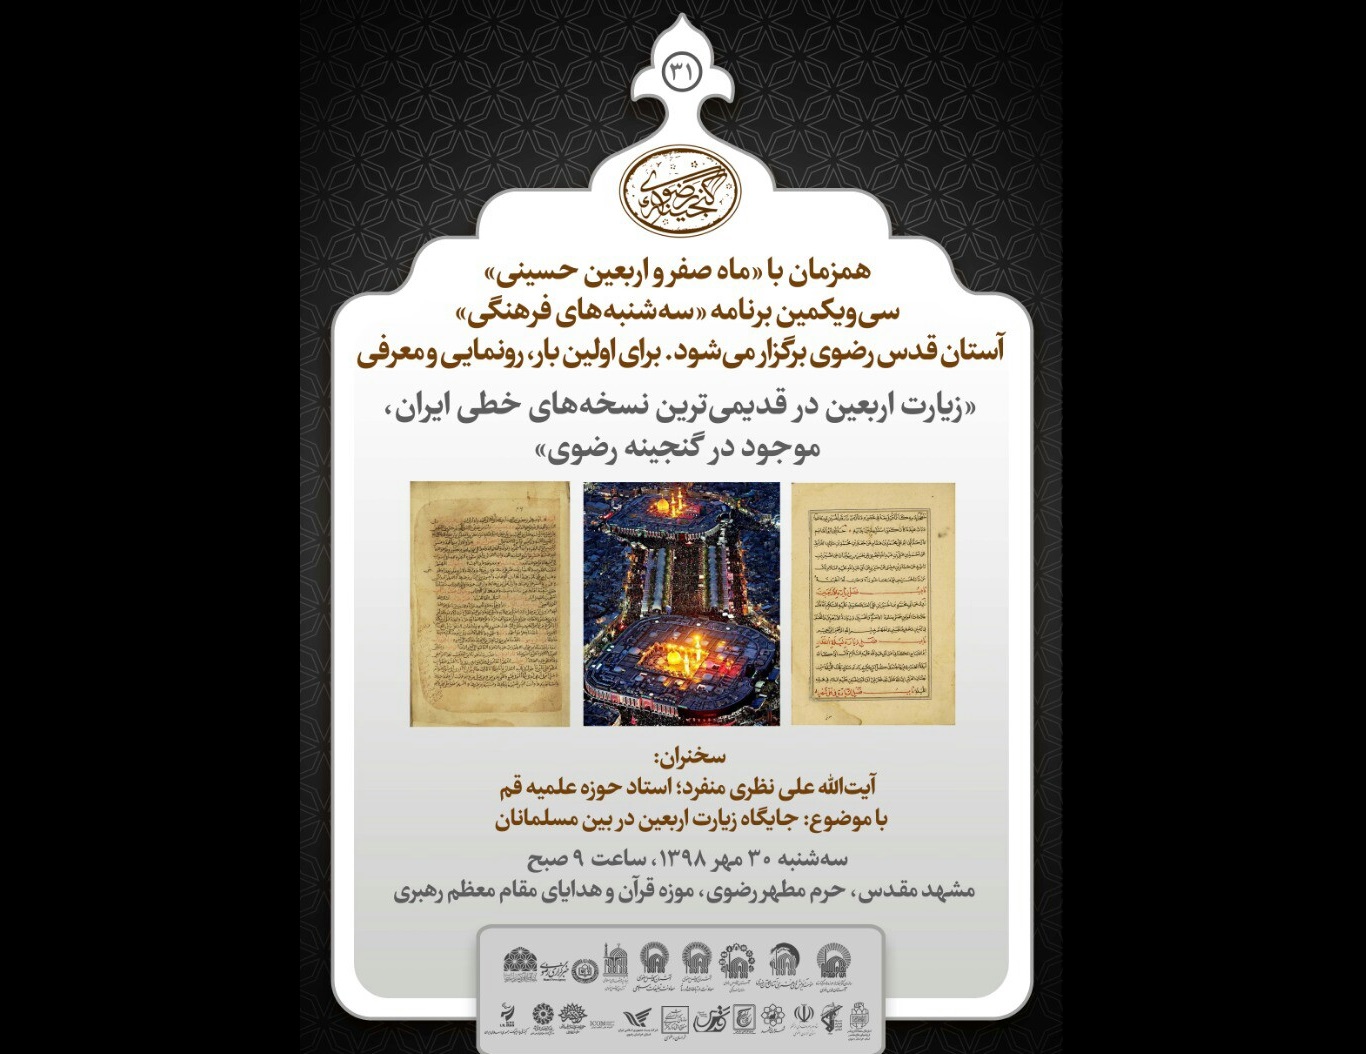 رونمایی از قدیمی ترین نسخه های خطی زیارت اربعین در ایران در آستان قدس رضوی